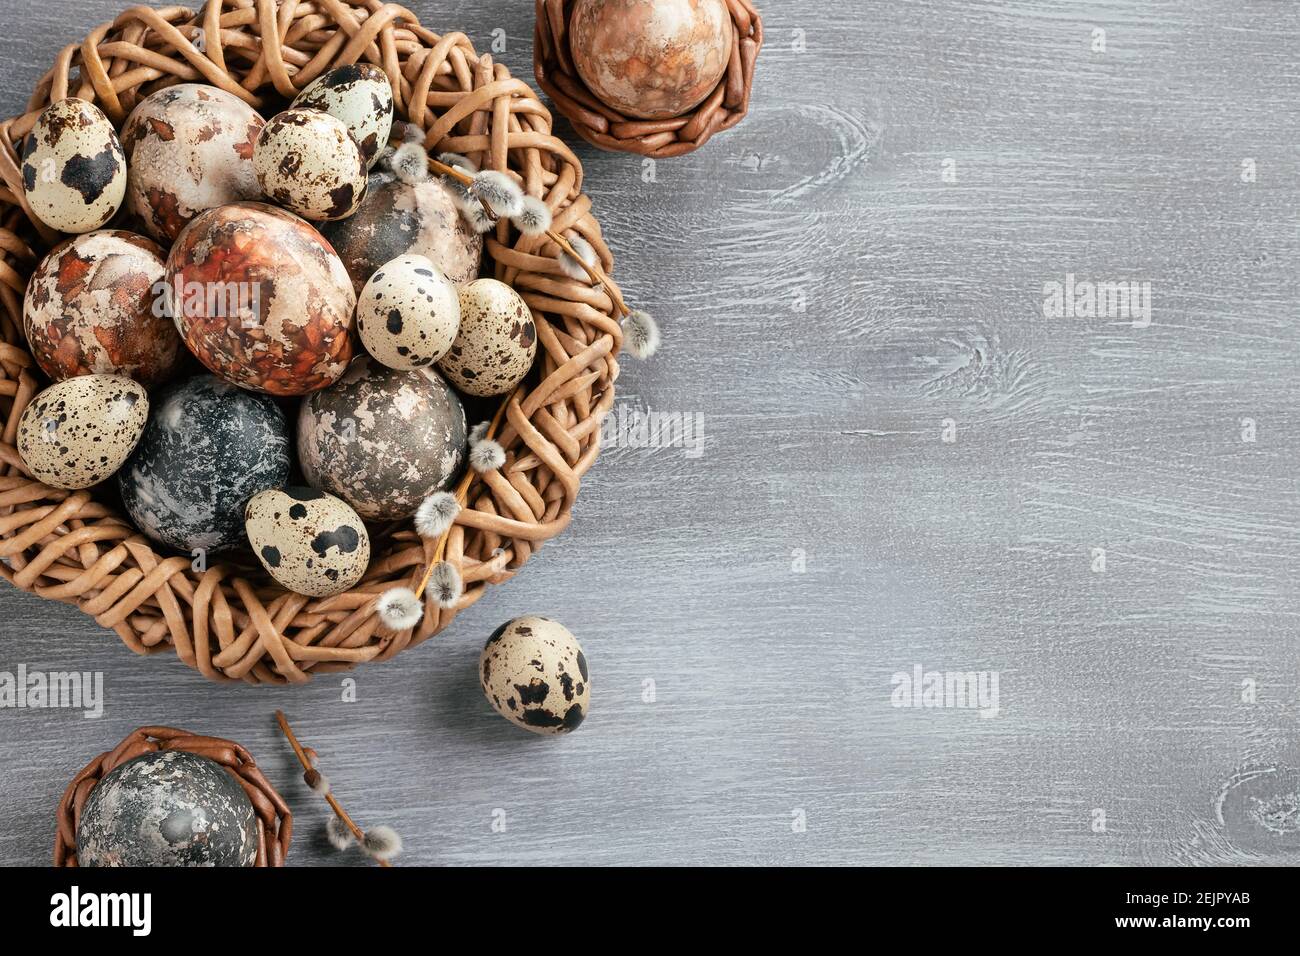 Composizione pasquale - diverse uova di marmo dipinte con coloranti naturali in un nido di vimini e cestini, vista dall'alto. Foto Stock